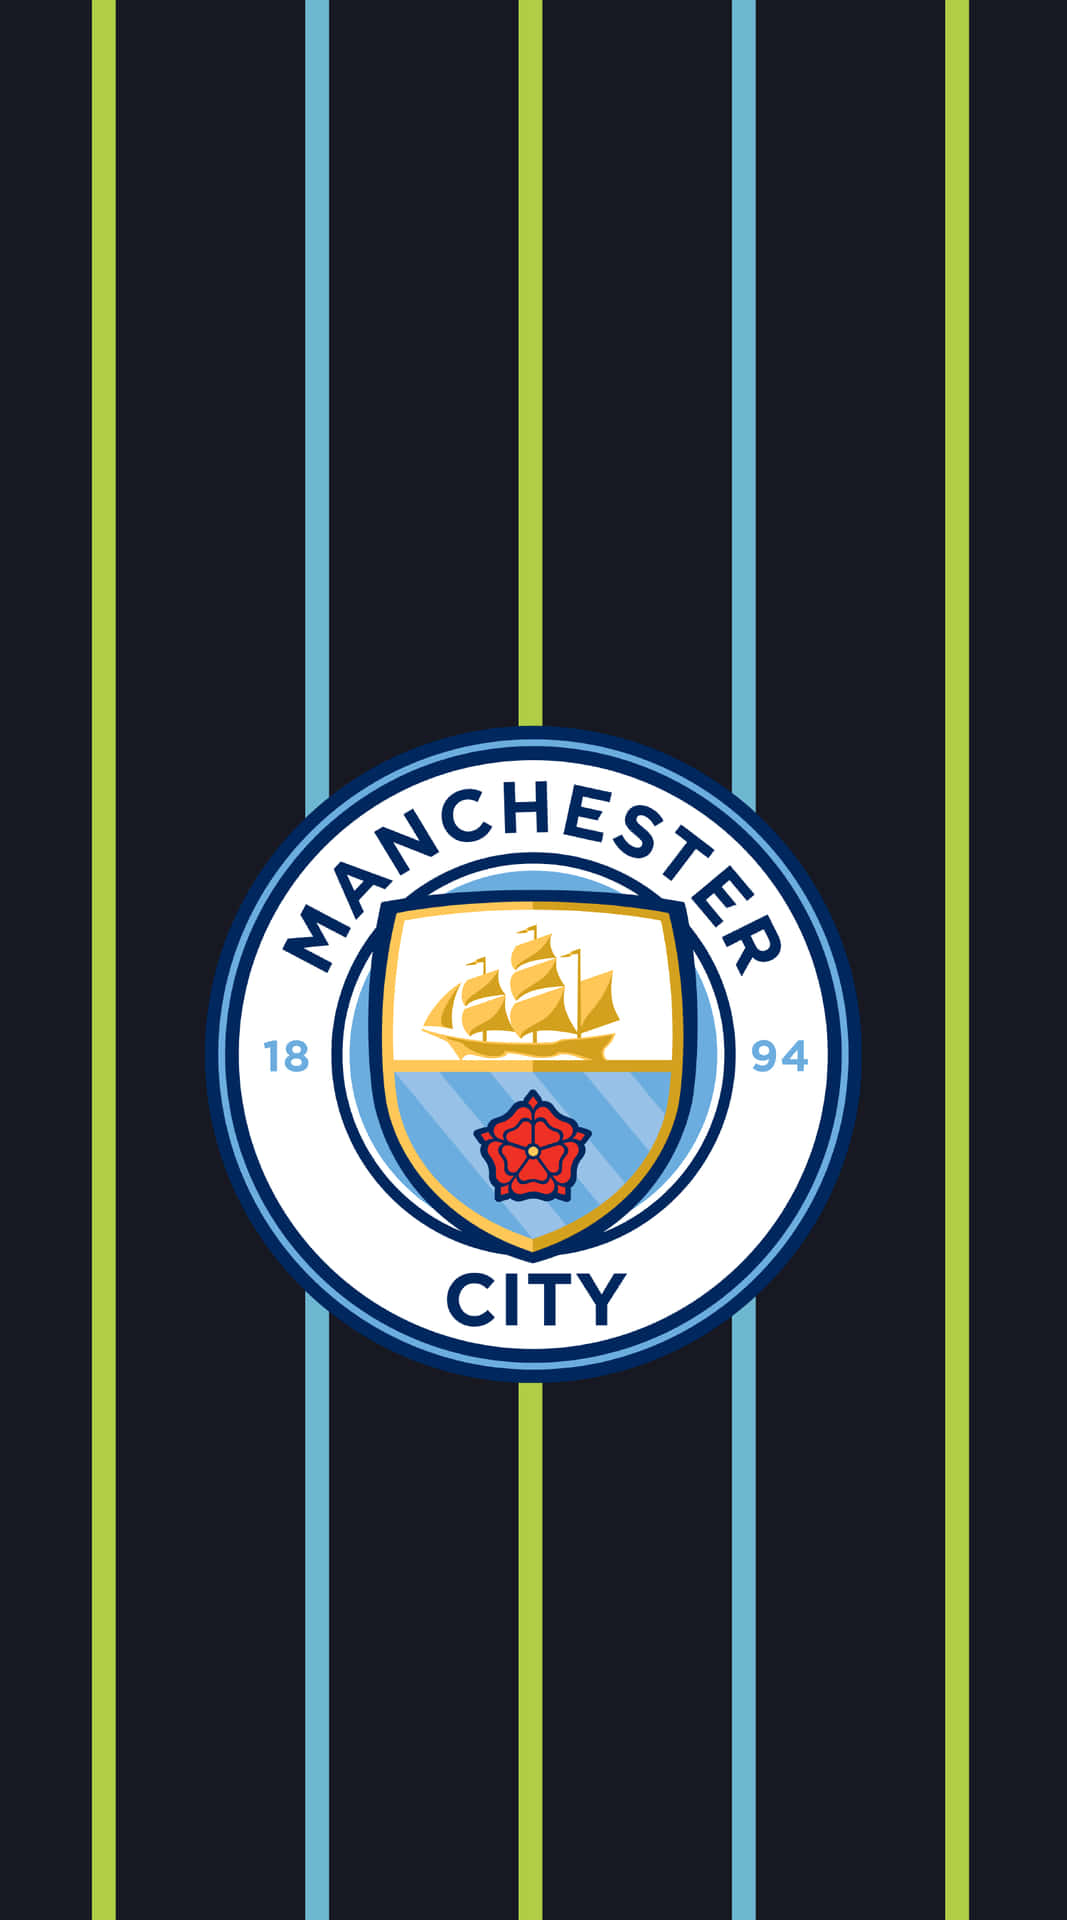 Wallpaper!upplev Spänningen Av Manchester City Med Denna Fantastiska Iphone-bakgrundsbild! Wallpaper